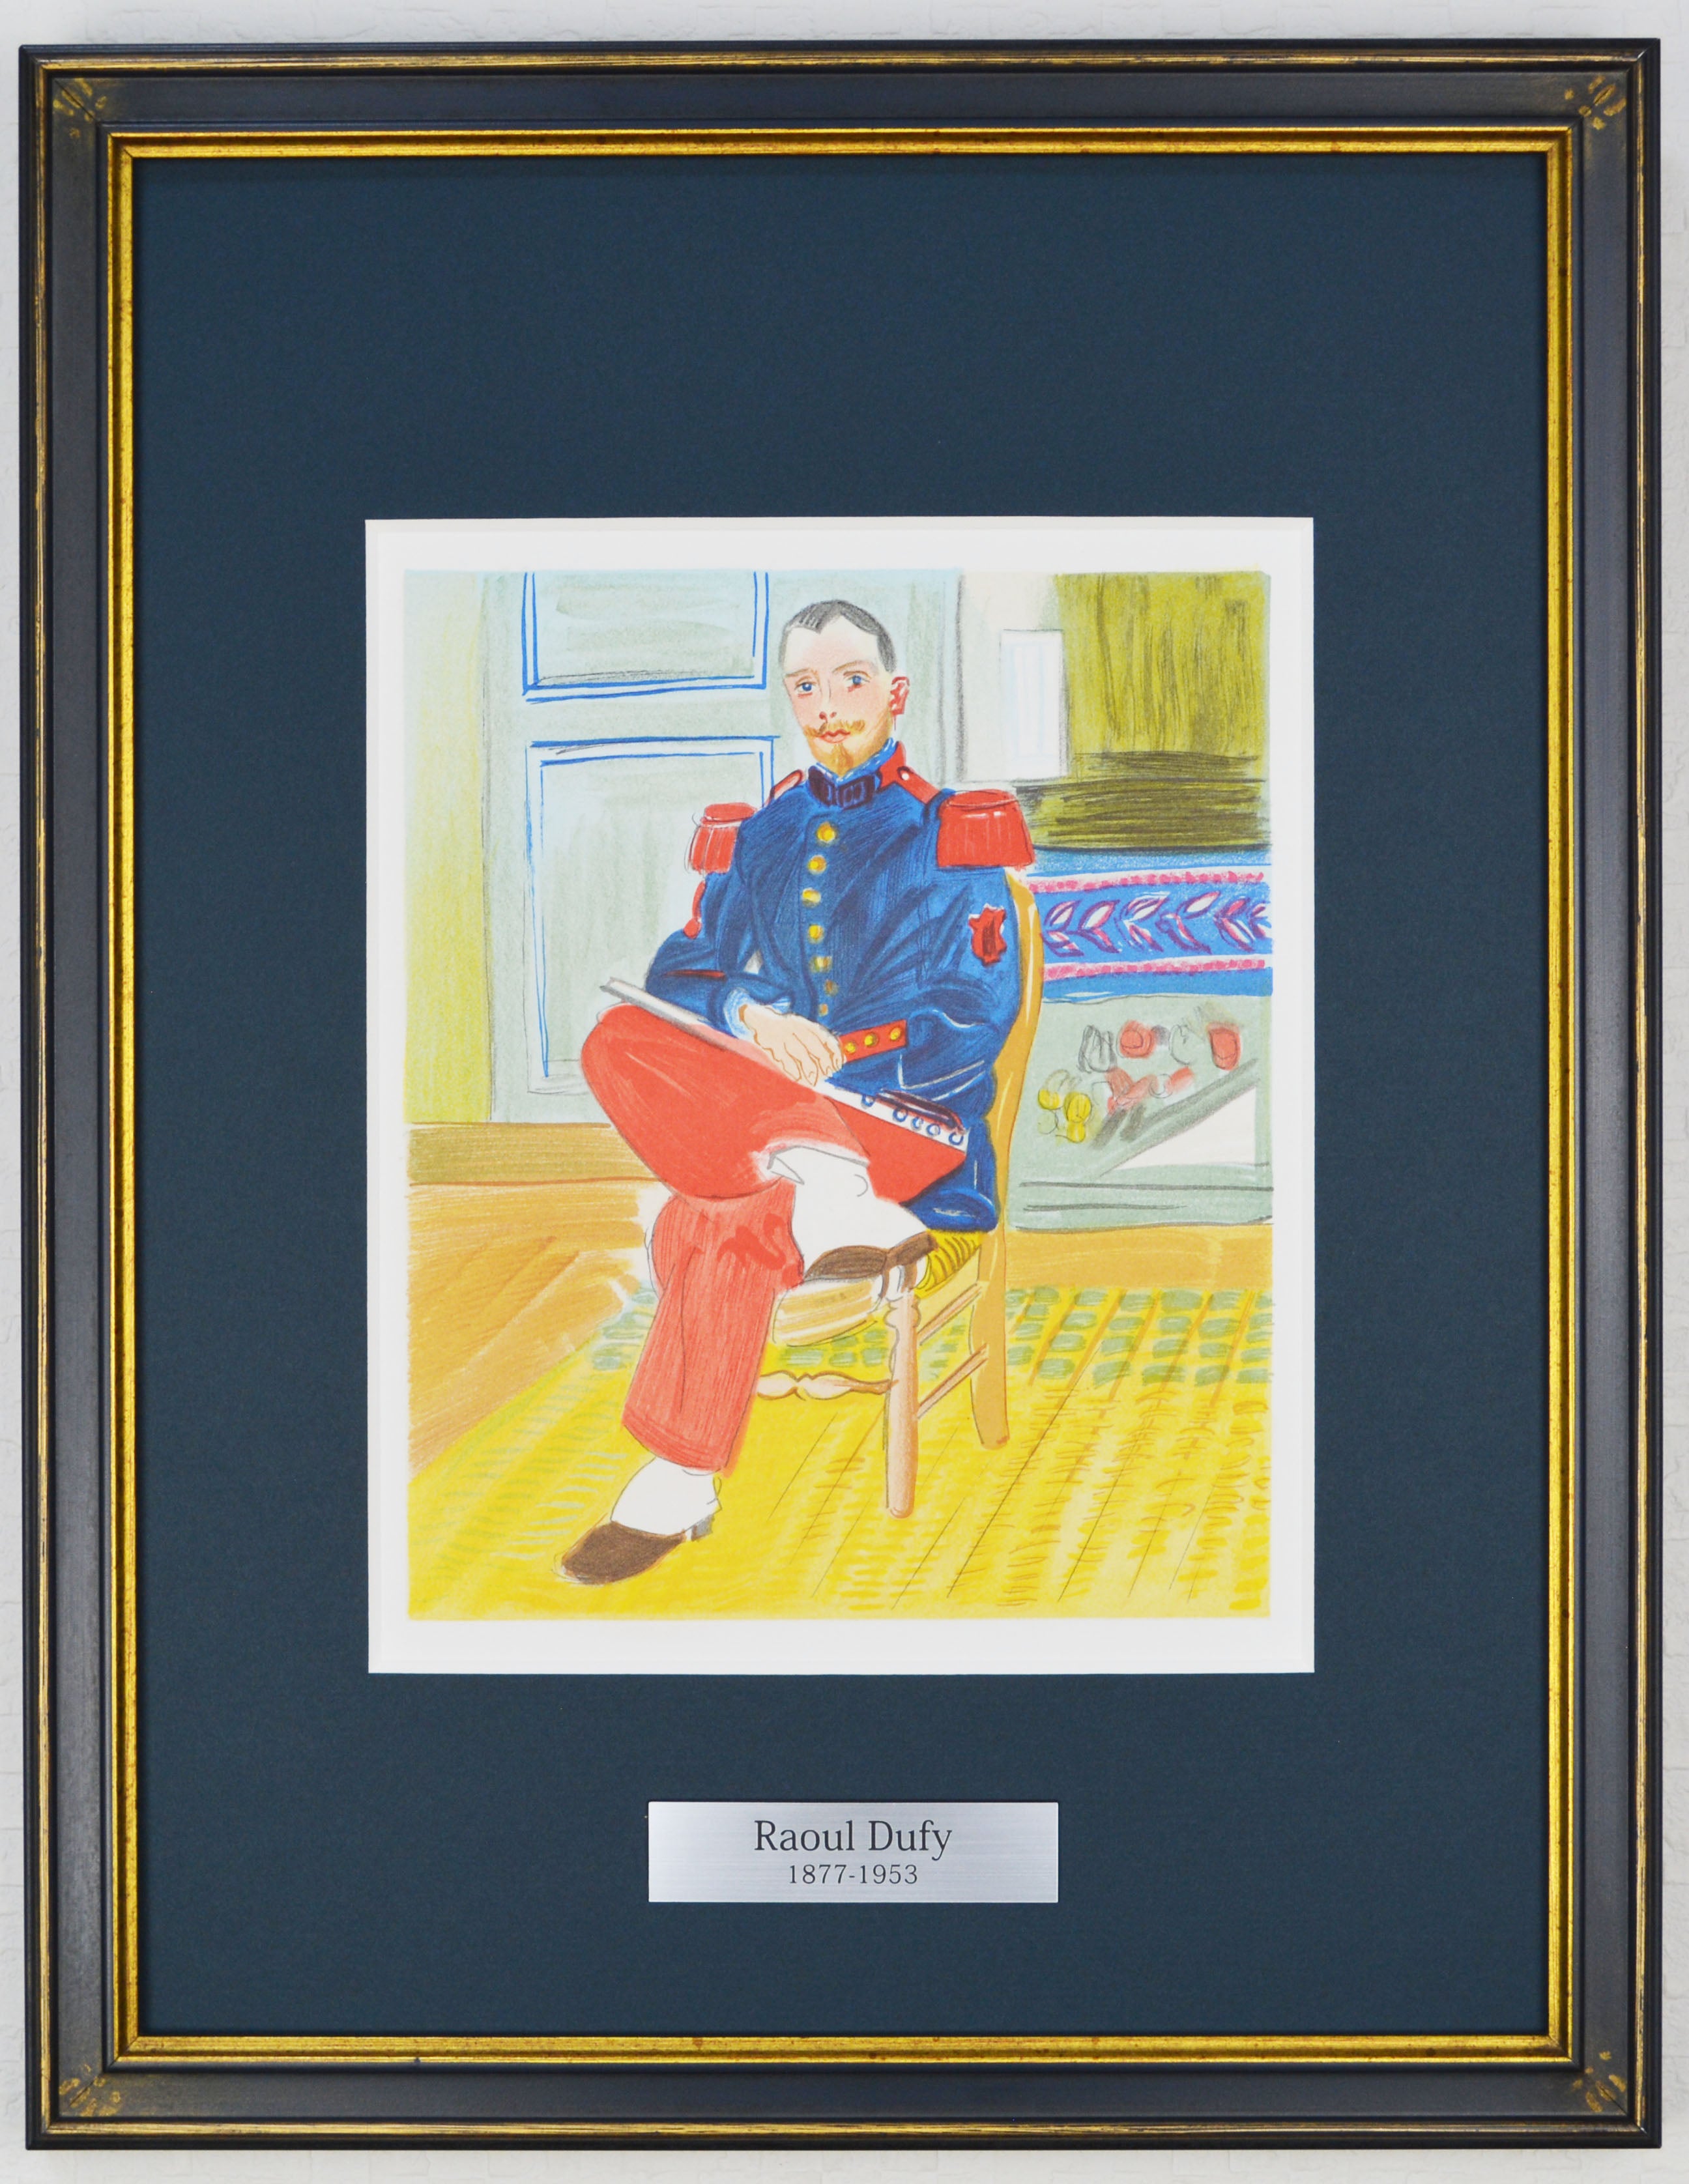 ラウル デュフィ 『フルート奏者Ⅱ 【ラウル・デュフィへの手紙】』 絵画 版画 リトグラフ 本 1965年パリで制作